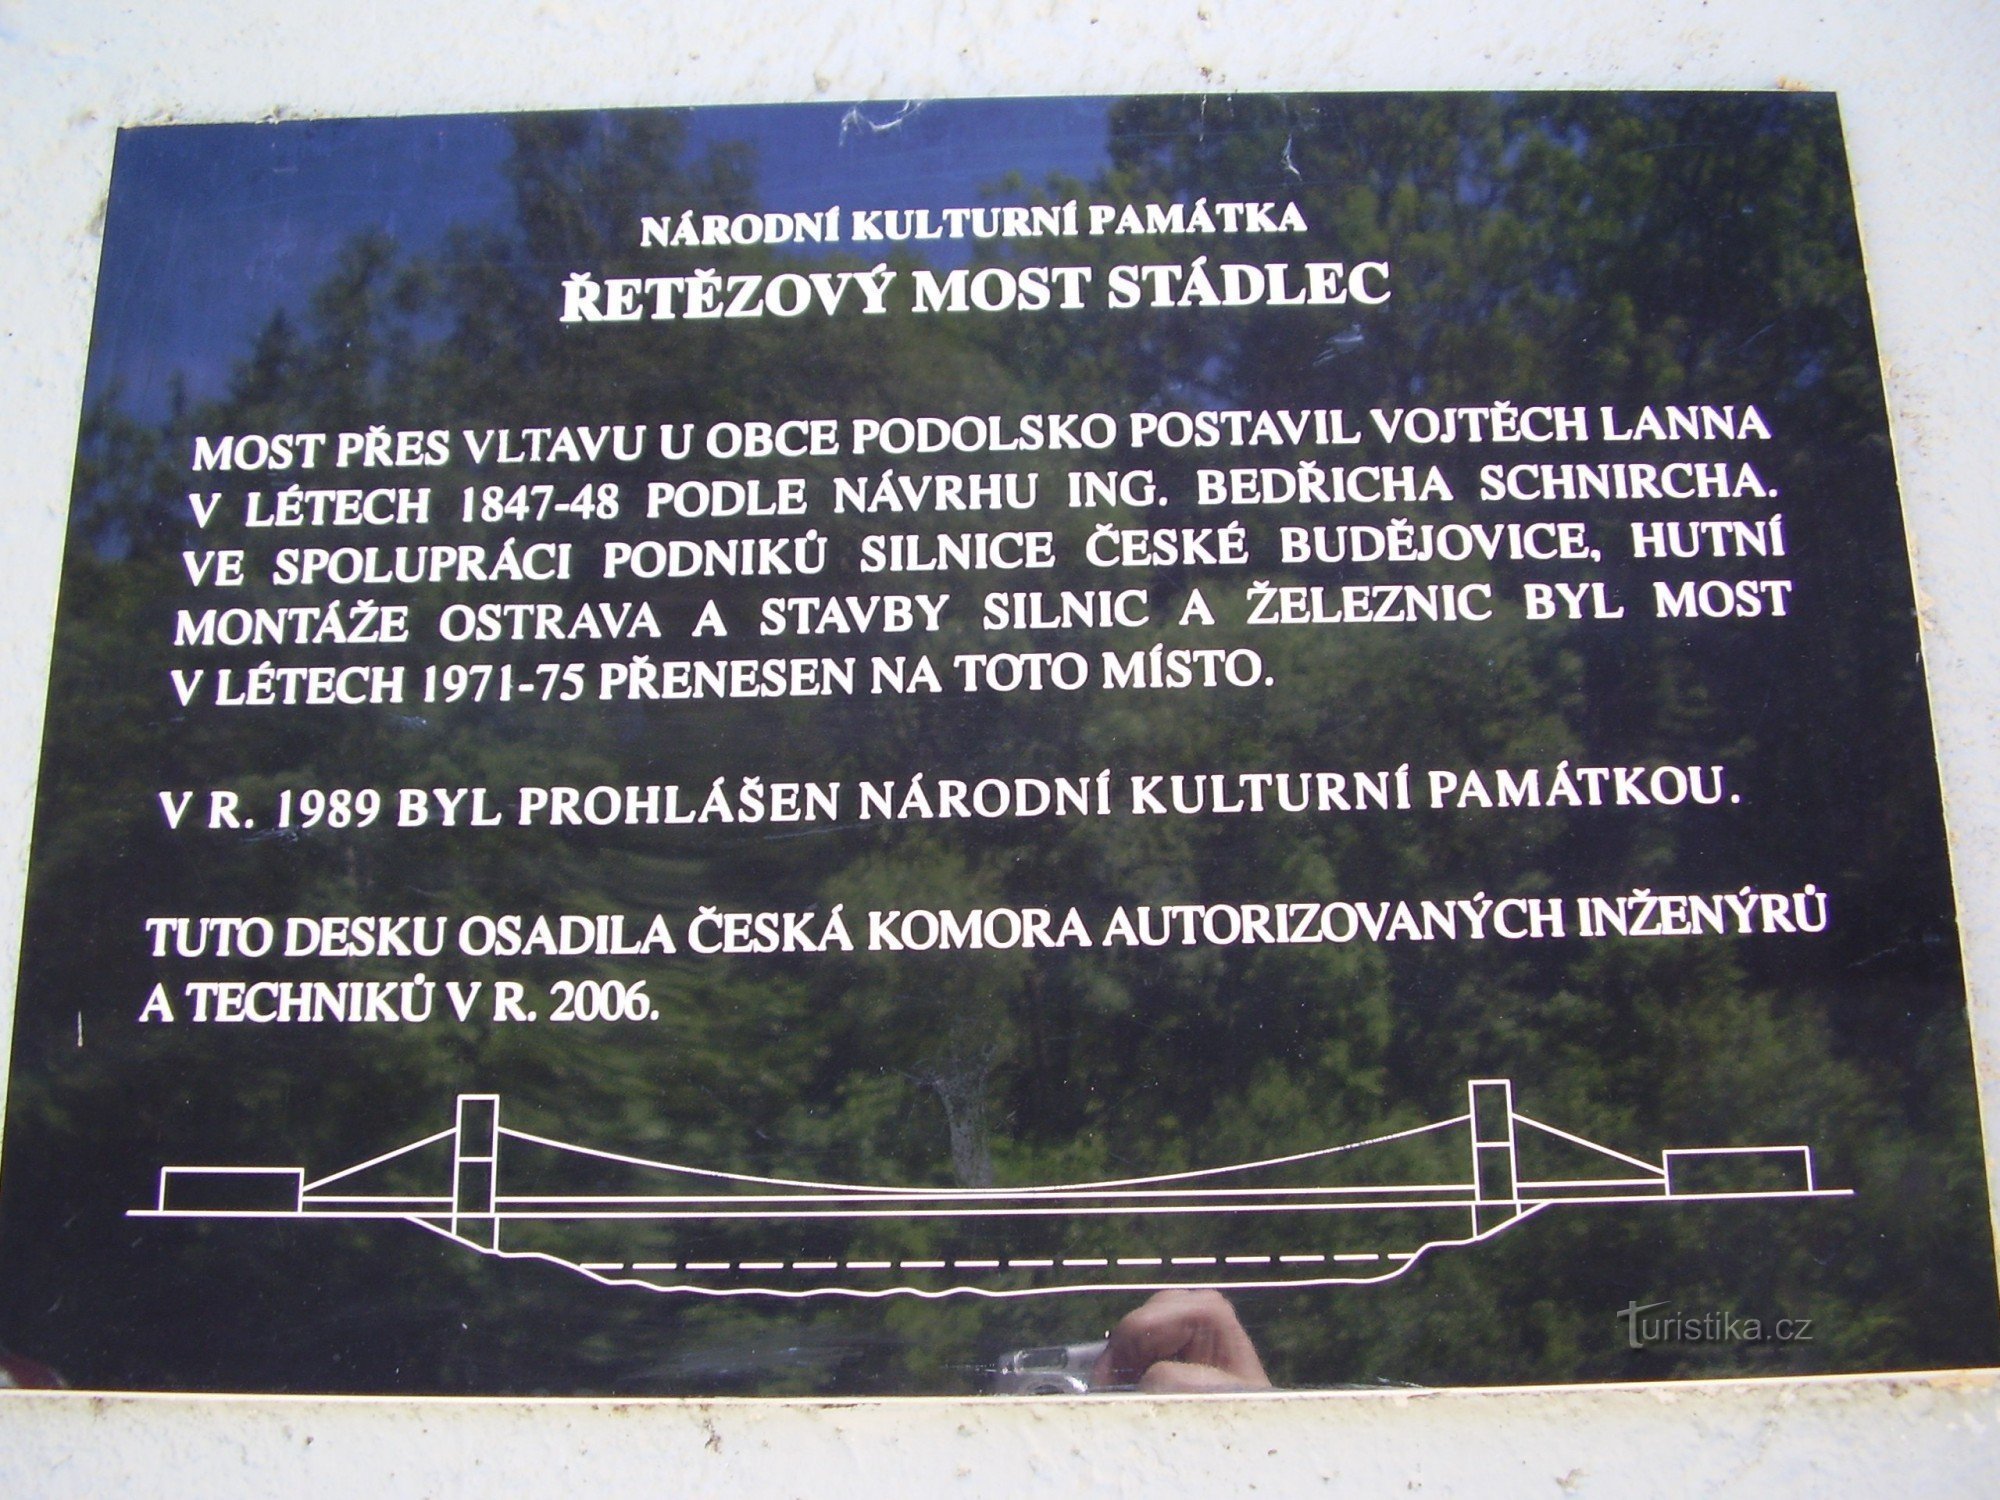 Ponte da cadeia em Stádlec